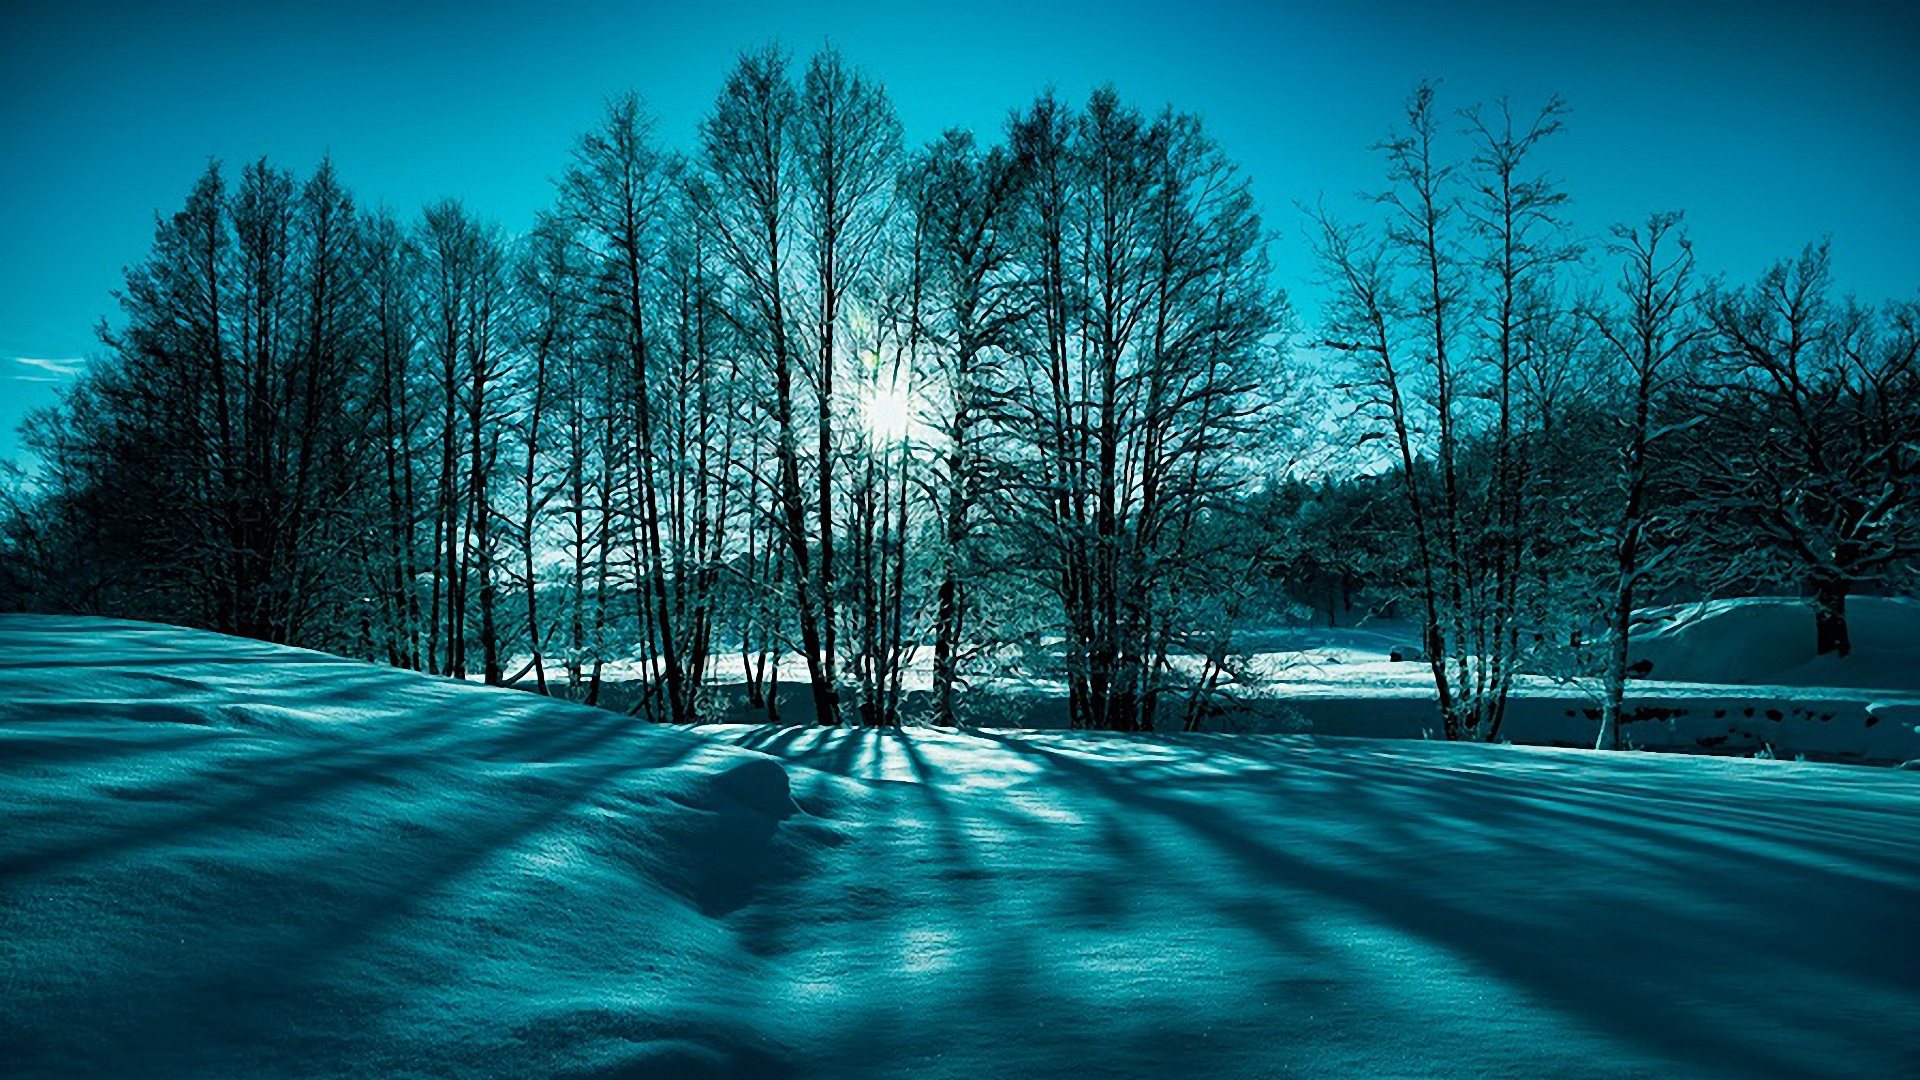 冬天的雪,树木,太阳,蓝色天空,雪地,风景桌面壁纸